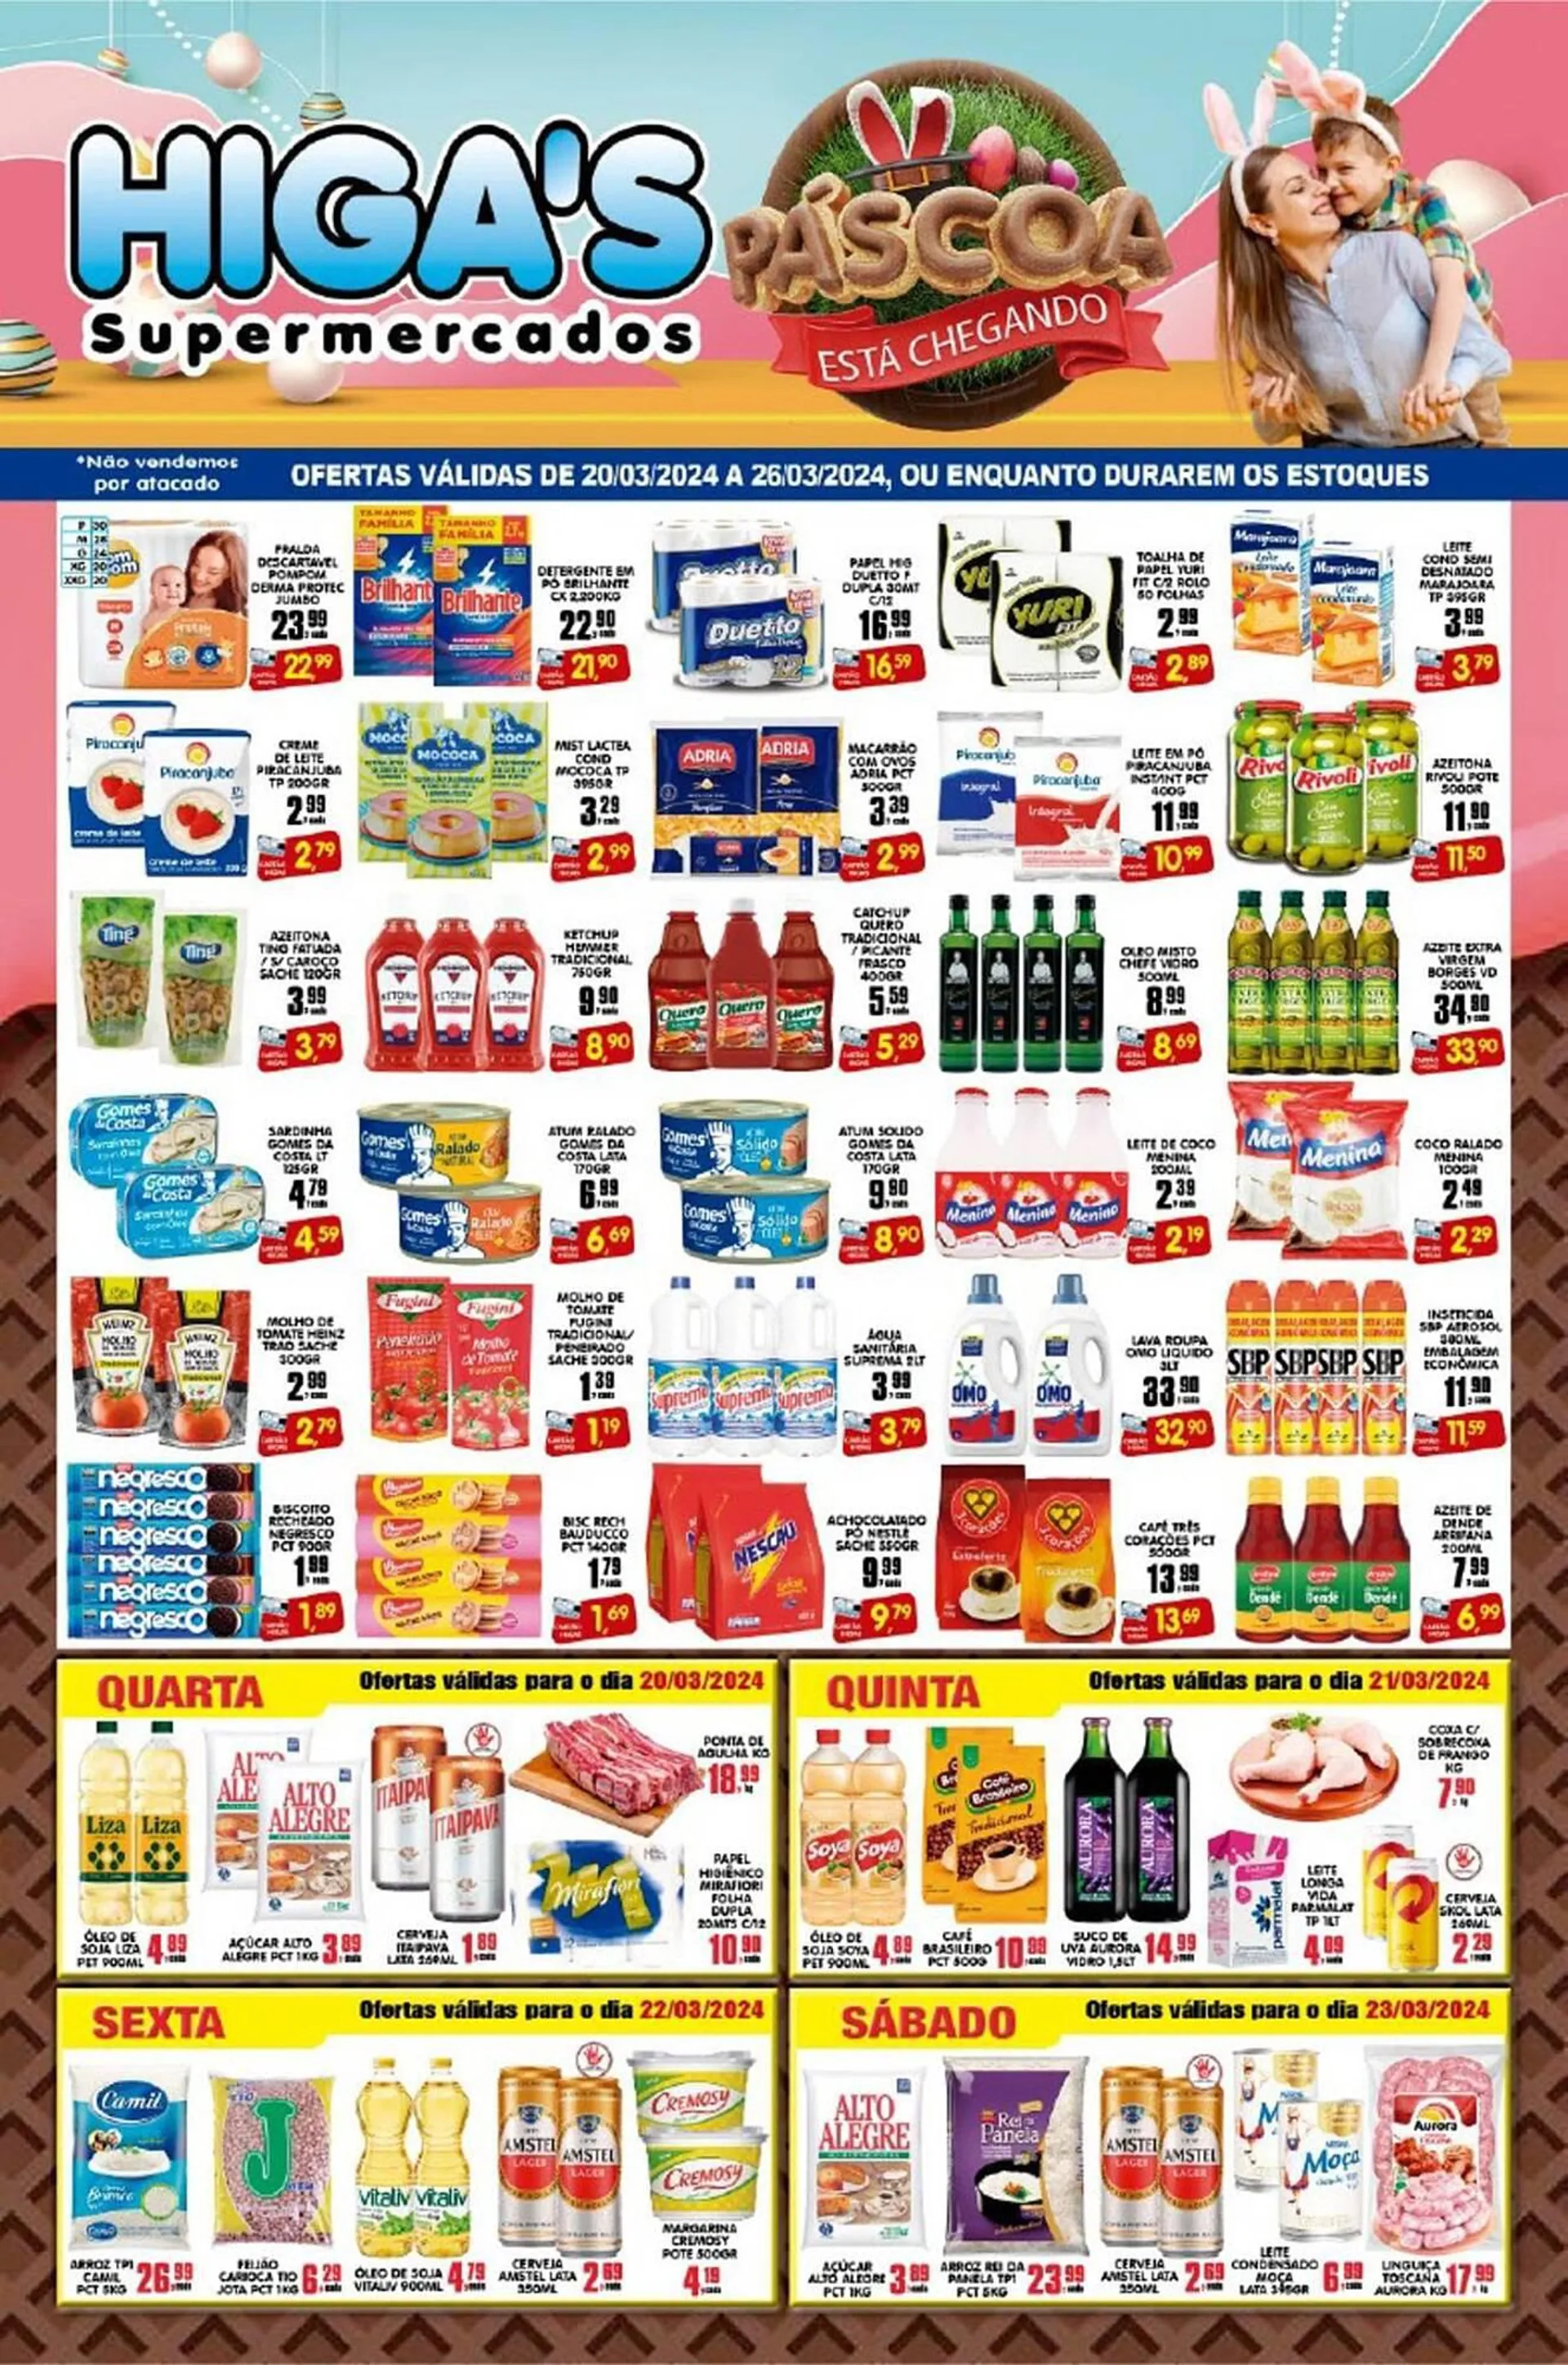 Encarte de Catálogo Higa's Supermercado 20 de março até 26 de março 2024 - Pagina 1